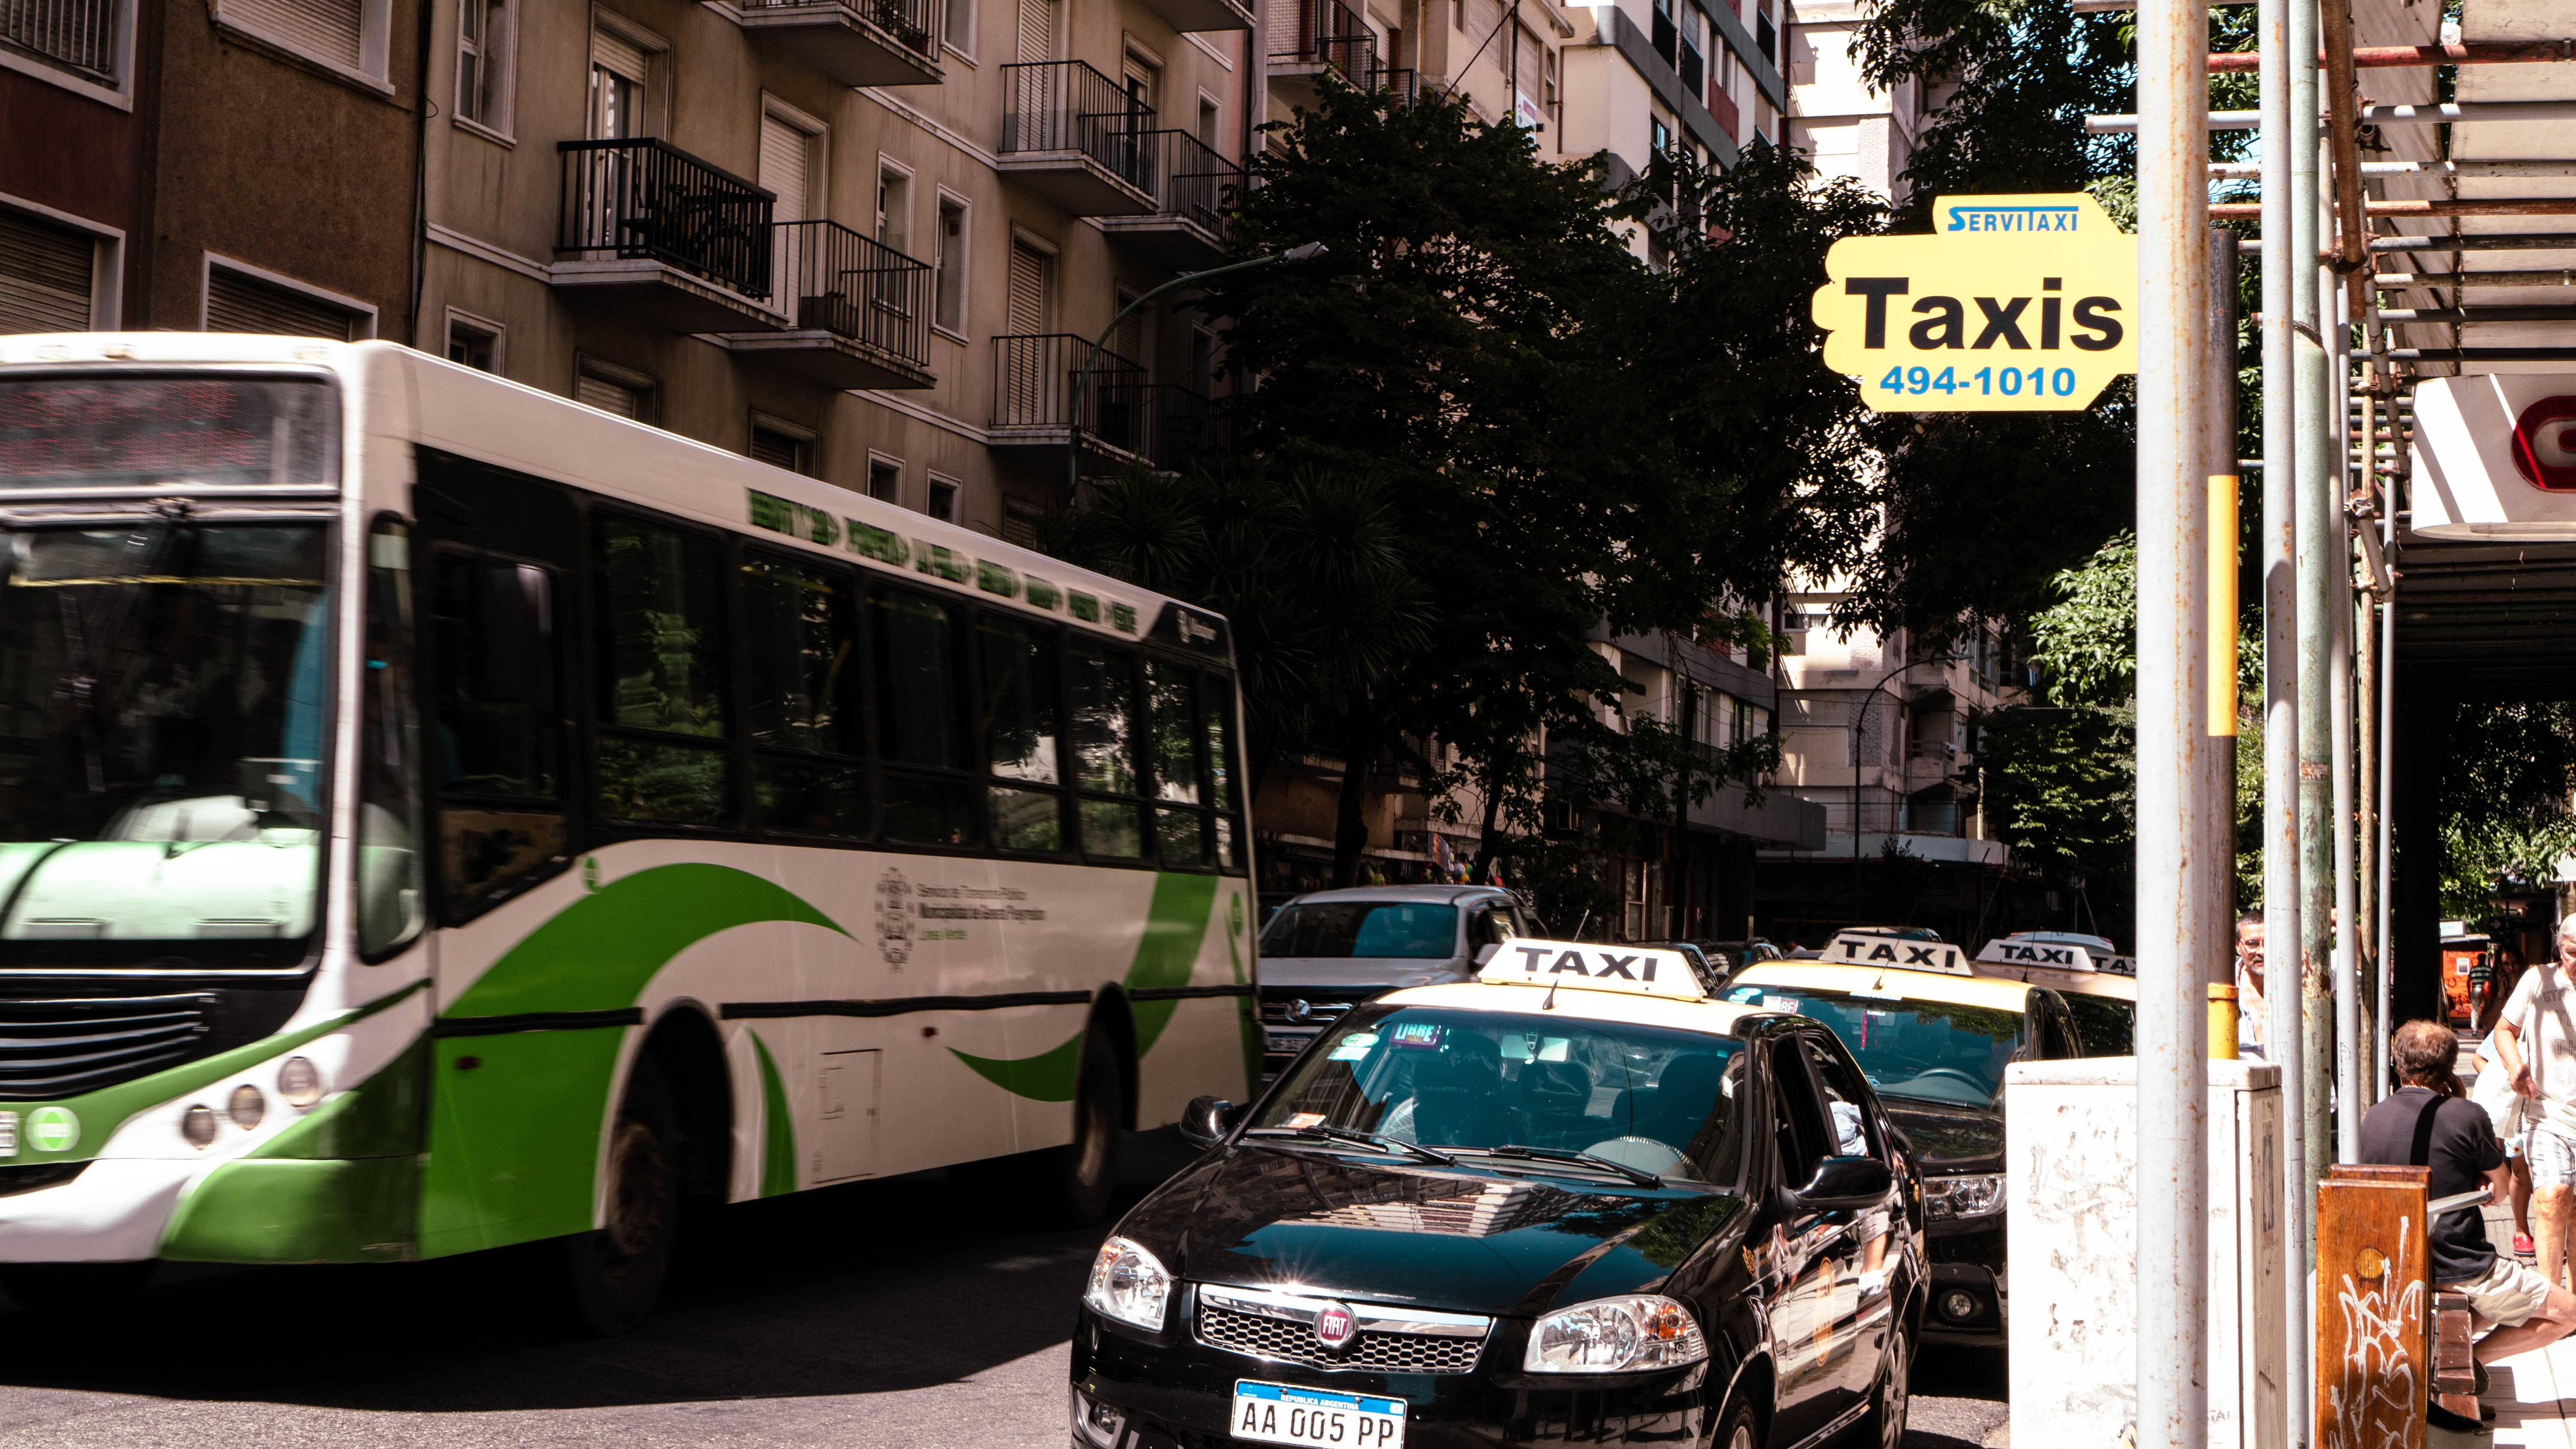 taxis_mar_del_plata_03_copy.jpg